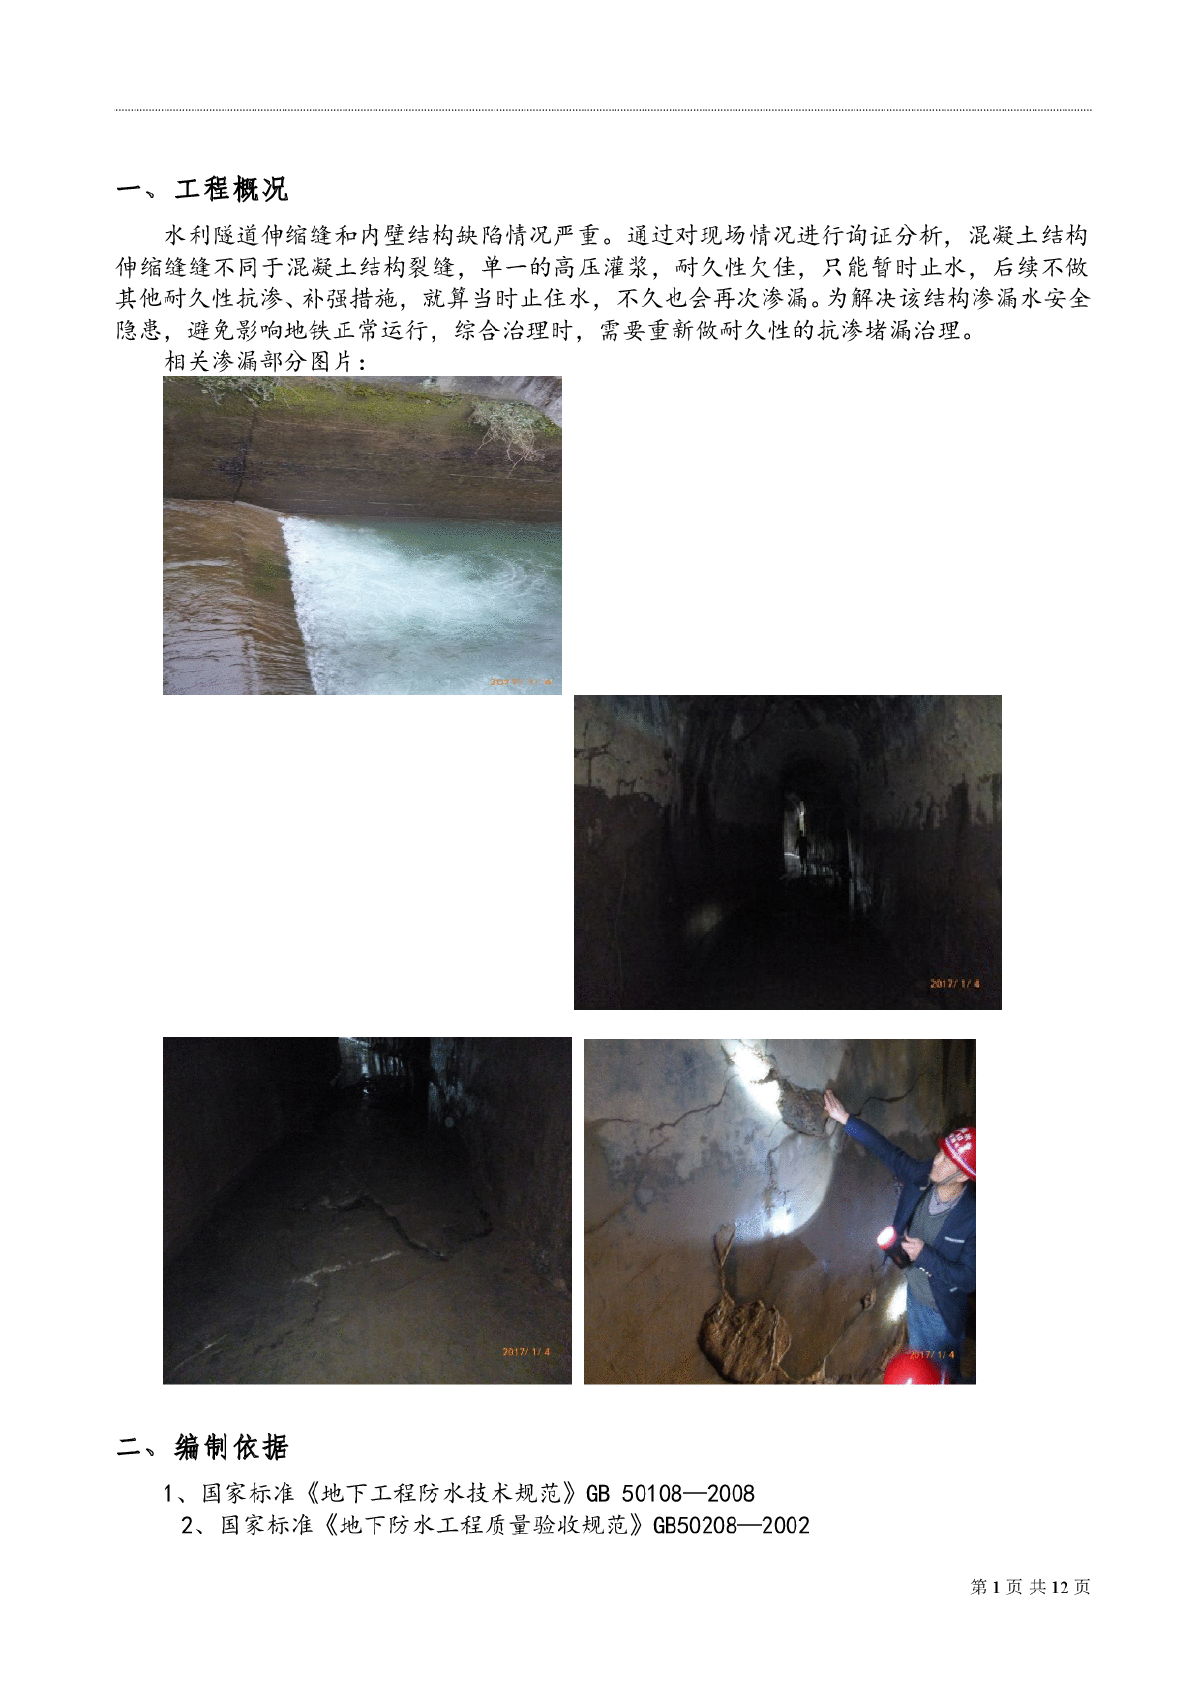 加固、堵漏、抗渗综合治理隧道漏水问题